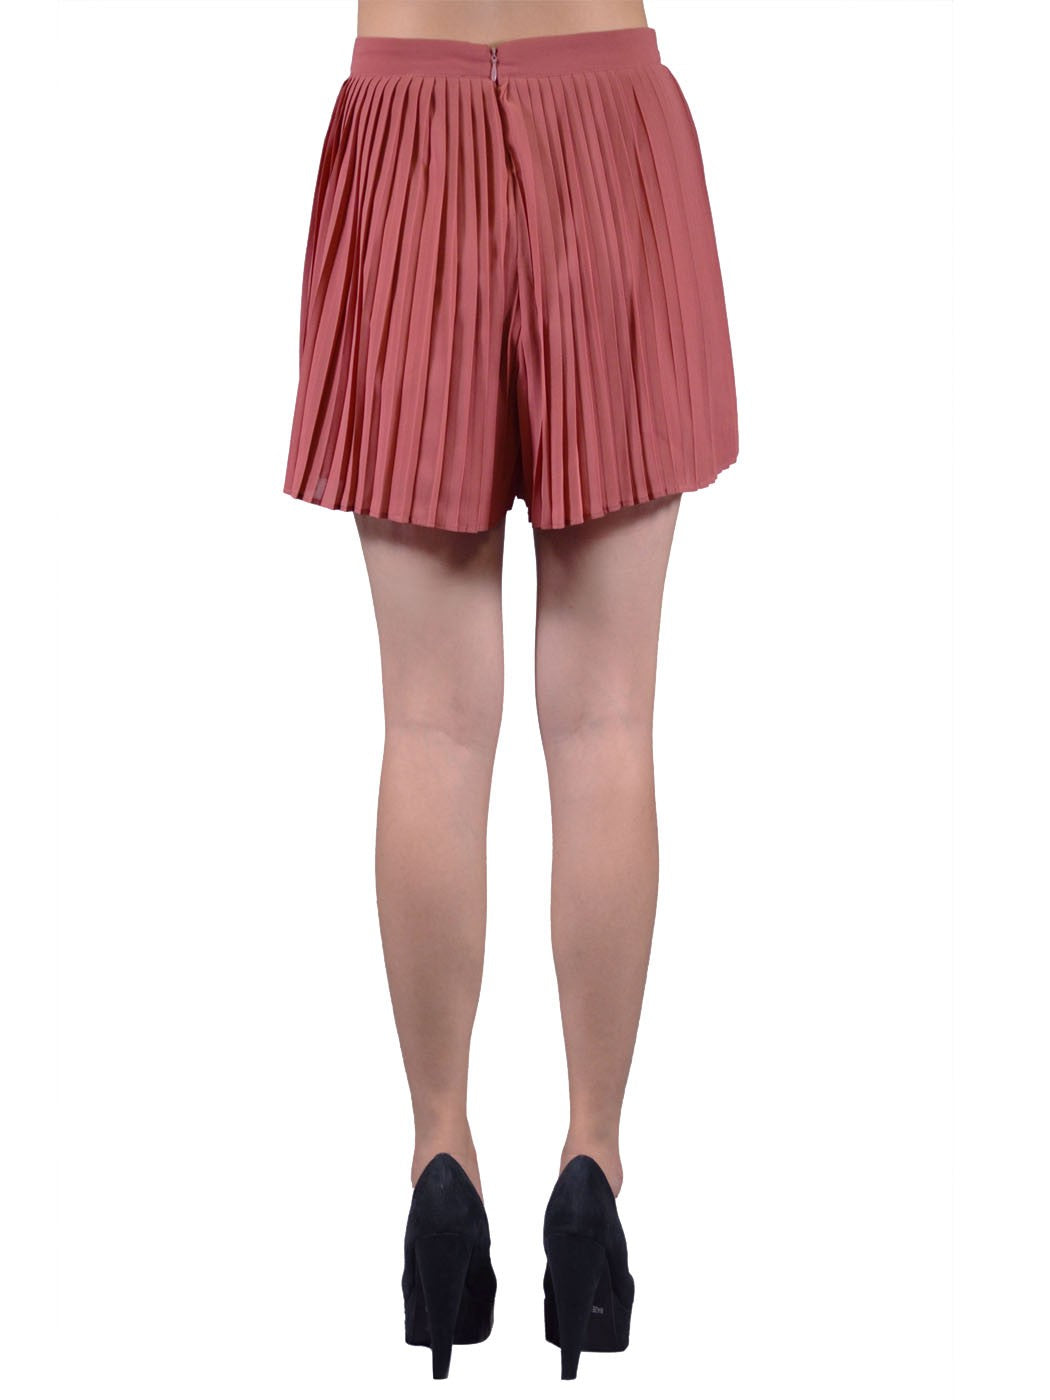 Lush Sophisticated Pursuit Janice Brick Pleated Flirty Chiffon Mini Shorts